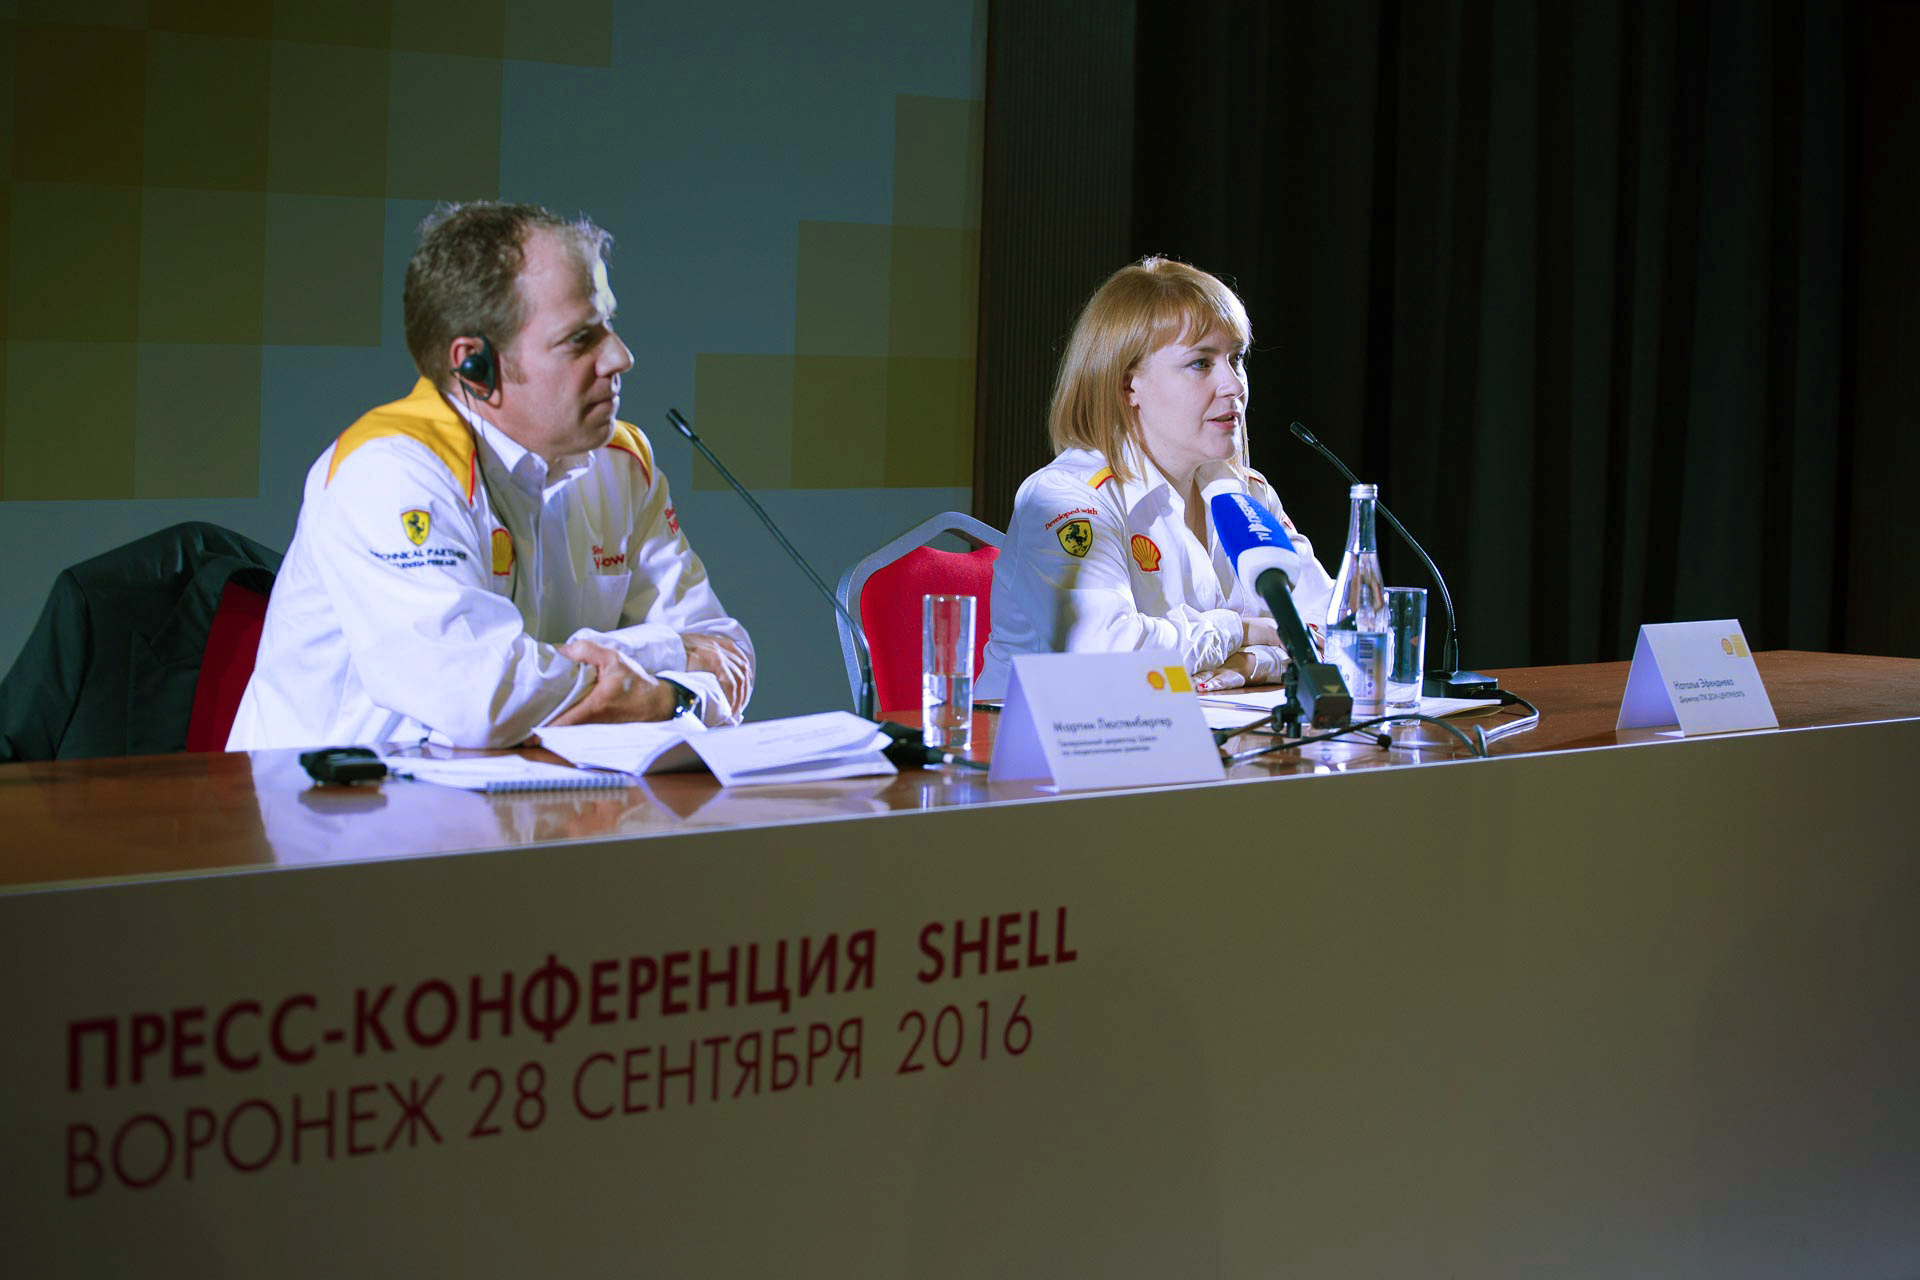 В Воронеже состоялось торжественное открытие сети заправок Shell